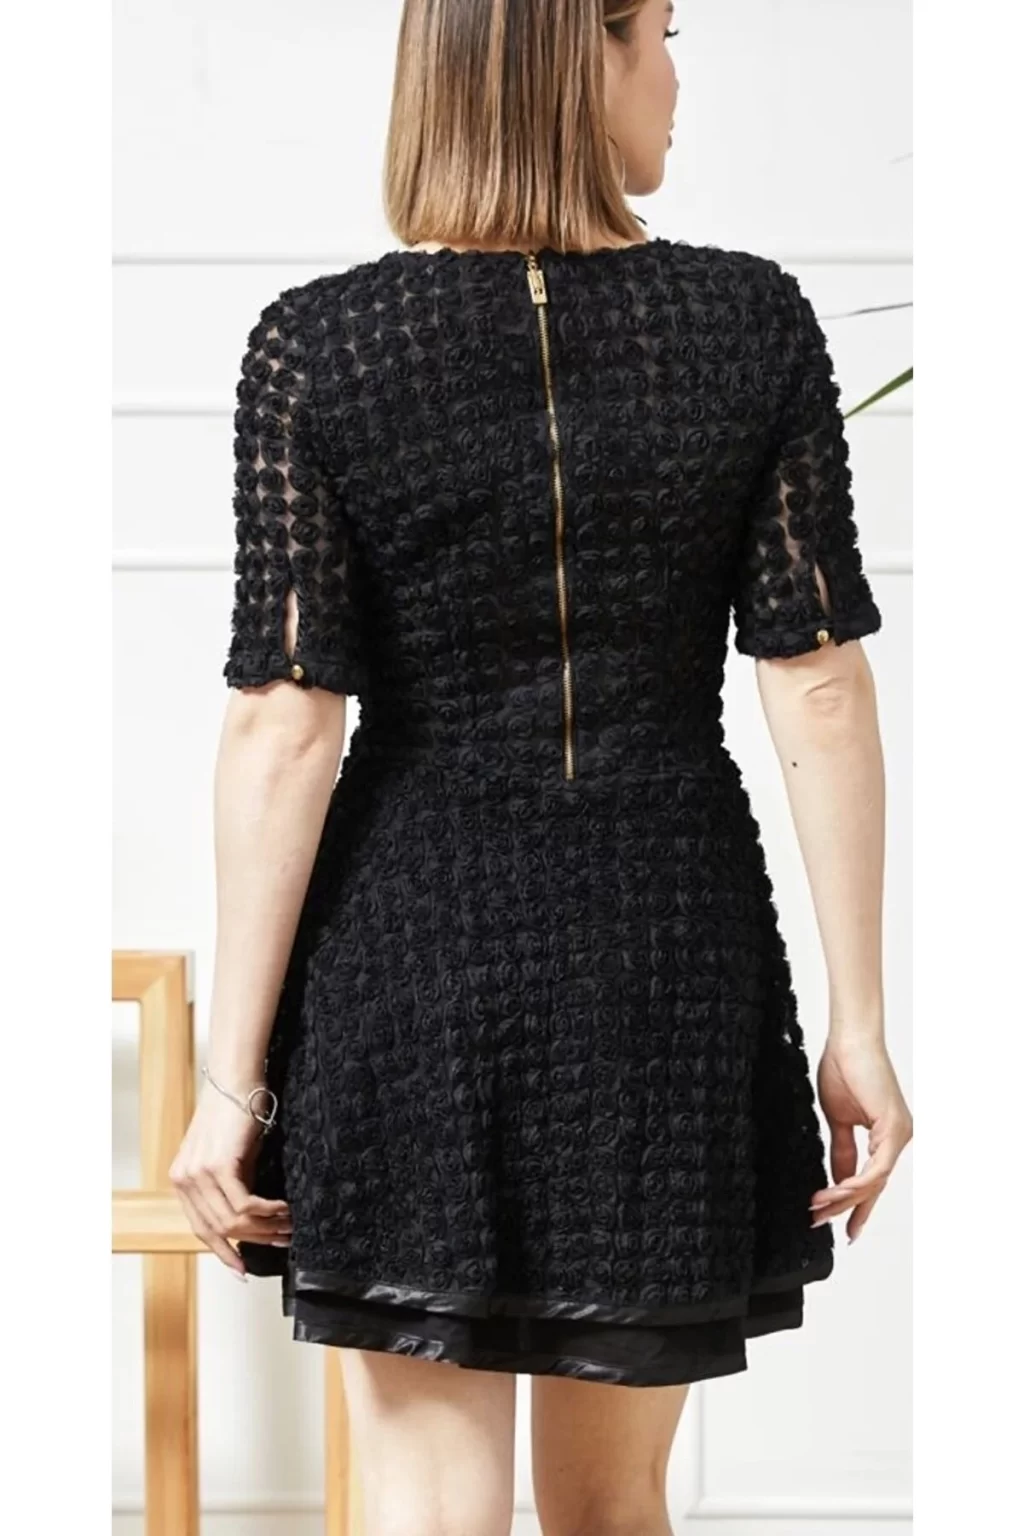 Alfani Petite Illusion-Lace Shift Dress (Black/White, 12P)